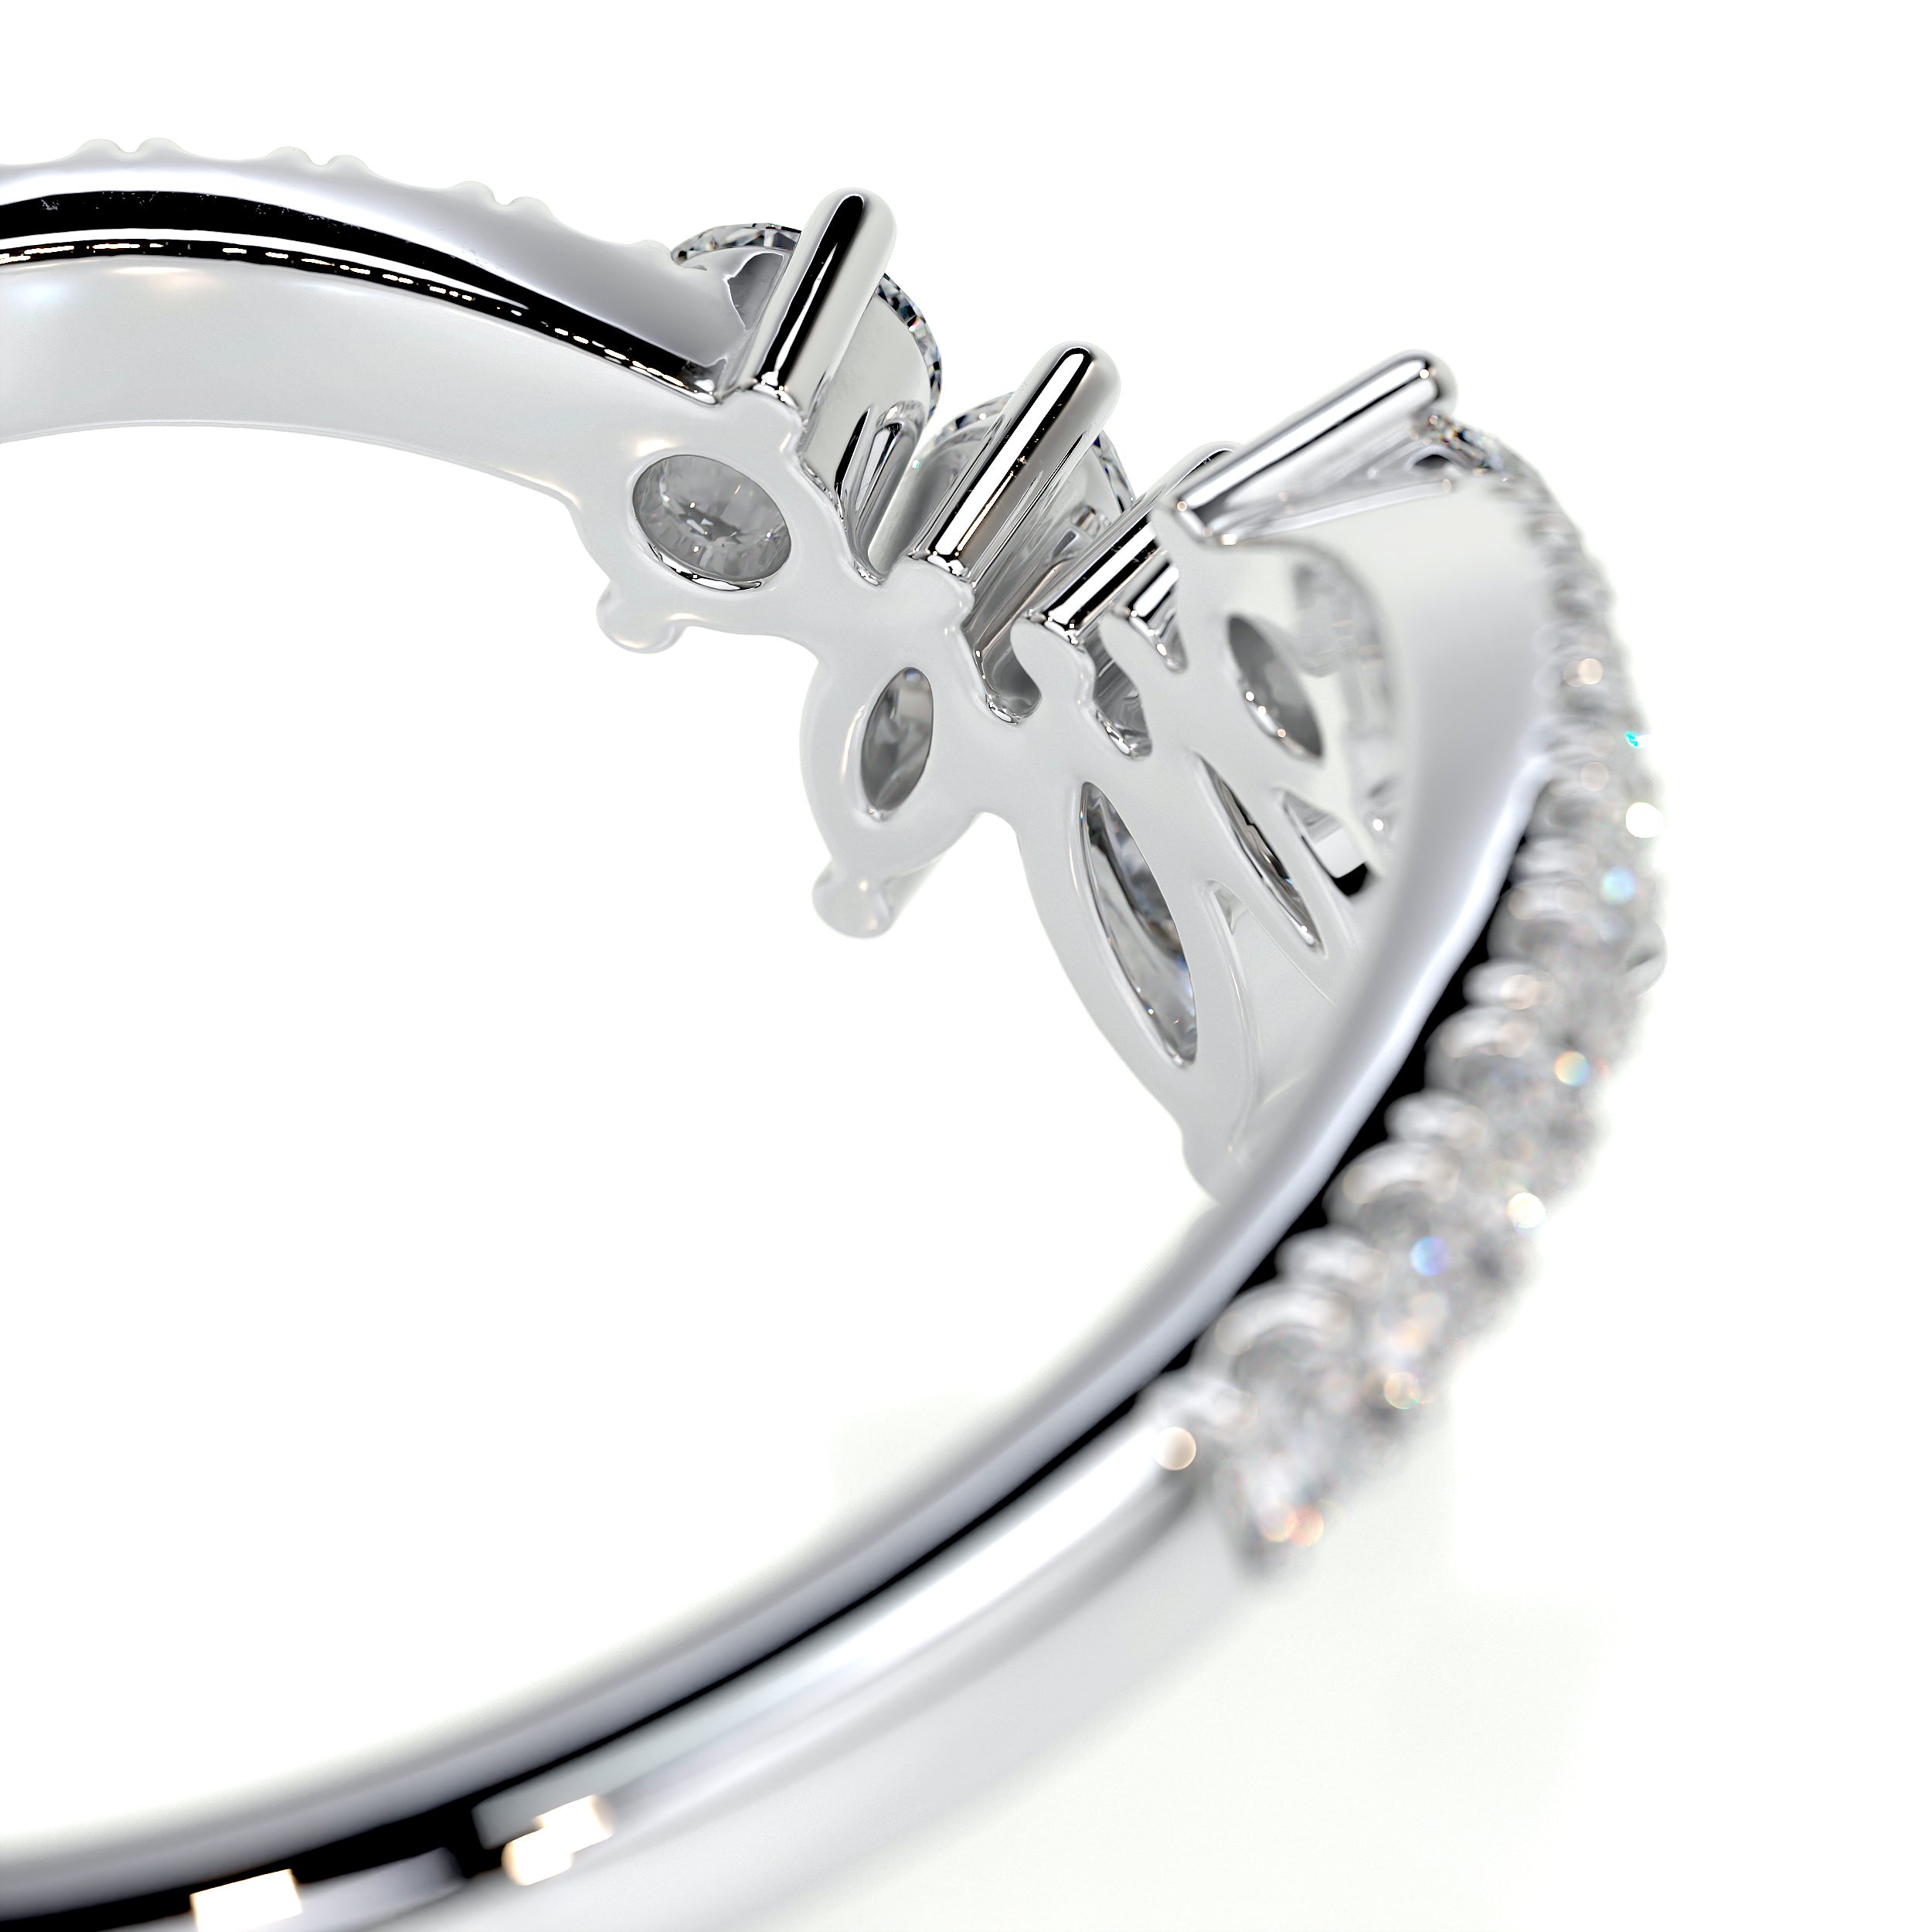 Lauren Diamond Wedding Ring   (0.30 Carat) -Platinum